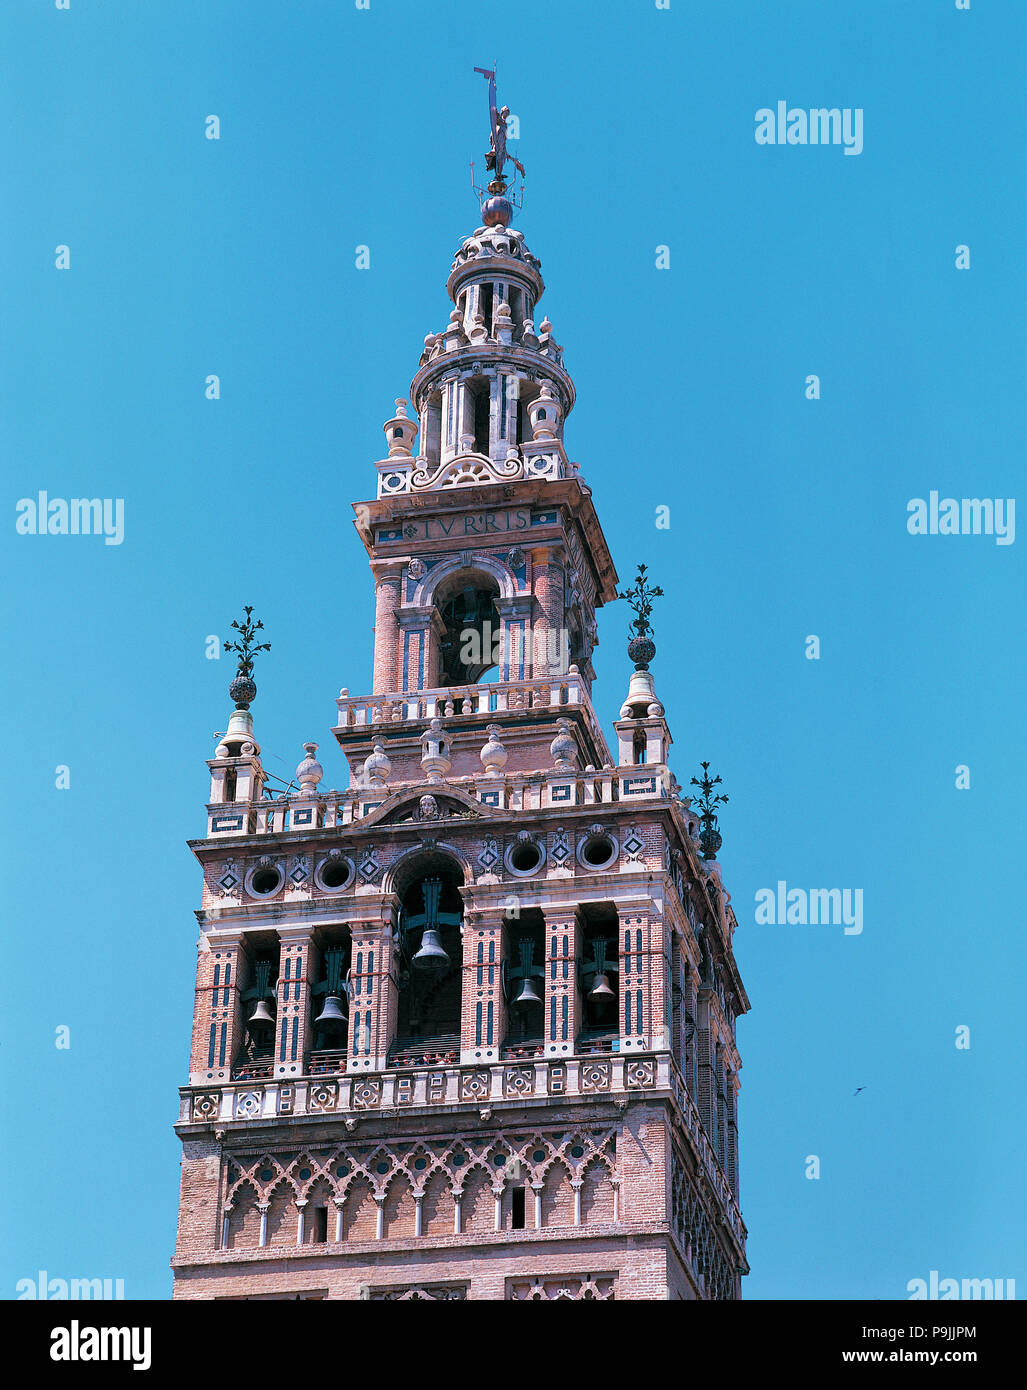 La Giralda, il minareto della vecchia moschea e ora il campanile della cattedrale, costruita in un… Foto Stock